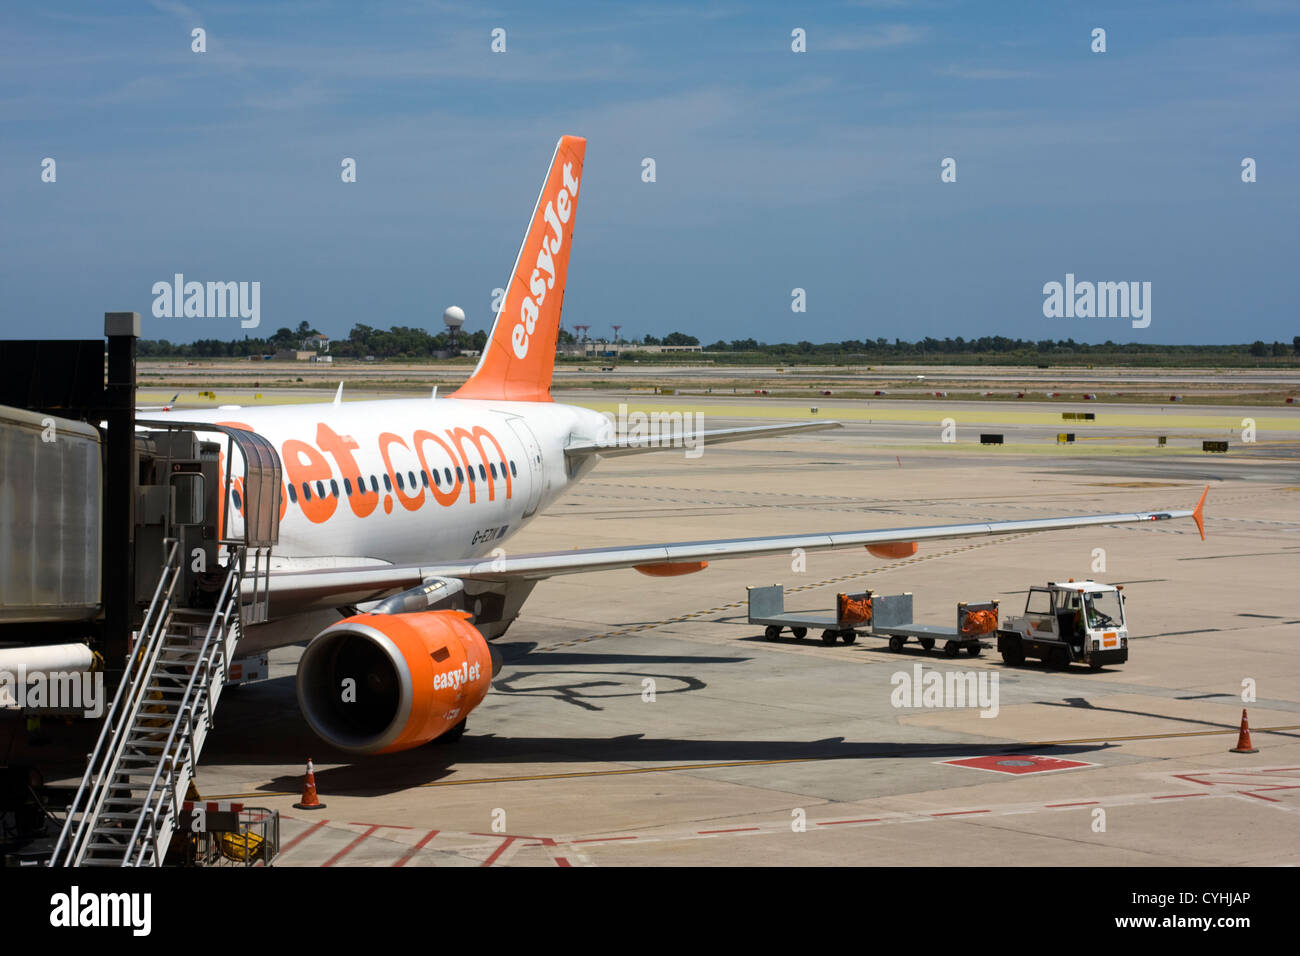 Avion de passagers d'Easyjet à l'aéroport El Prat de Barcelone. Banque D'Images